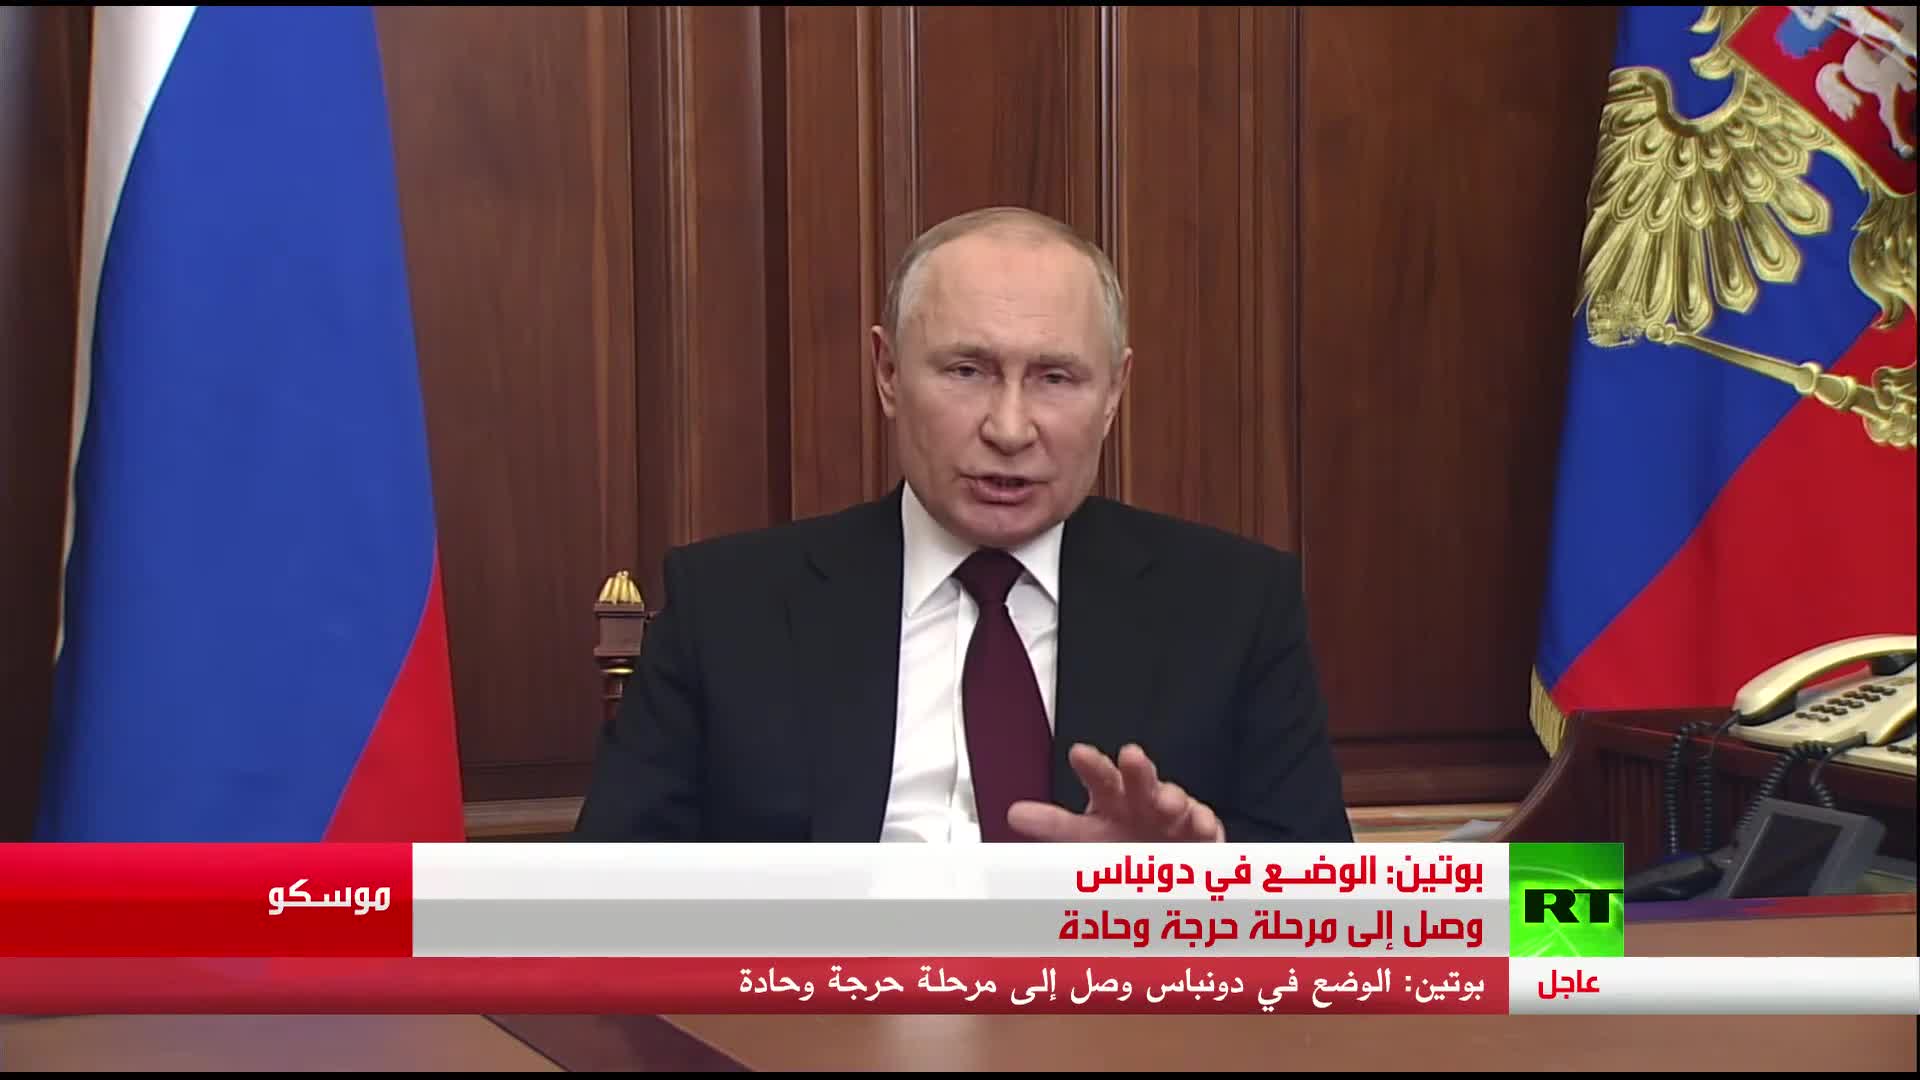 الرئيس بوتين يوجه الكلمة إلى الشعب الروسي ويعلن الاعتراف بجمهوريتي دونيتسك ولوغانسك